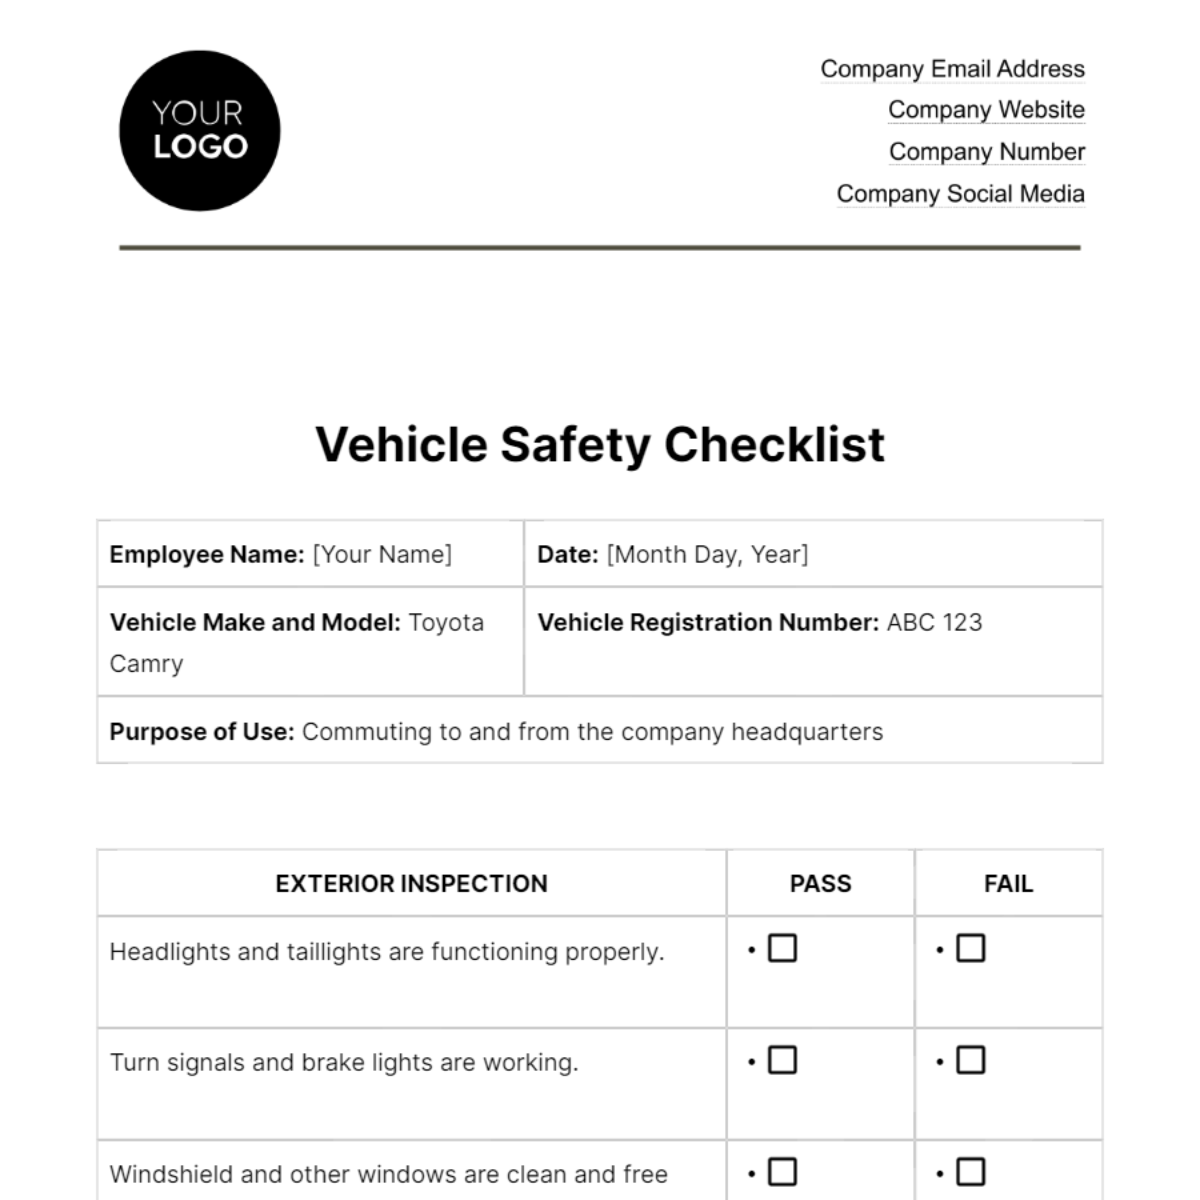 Vehicle Safety Checklist HR Template